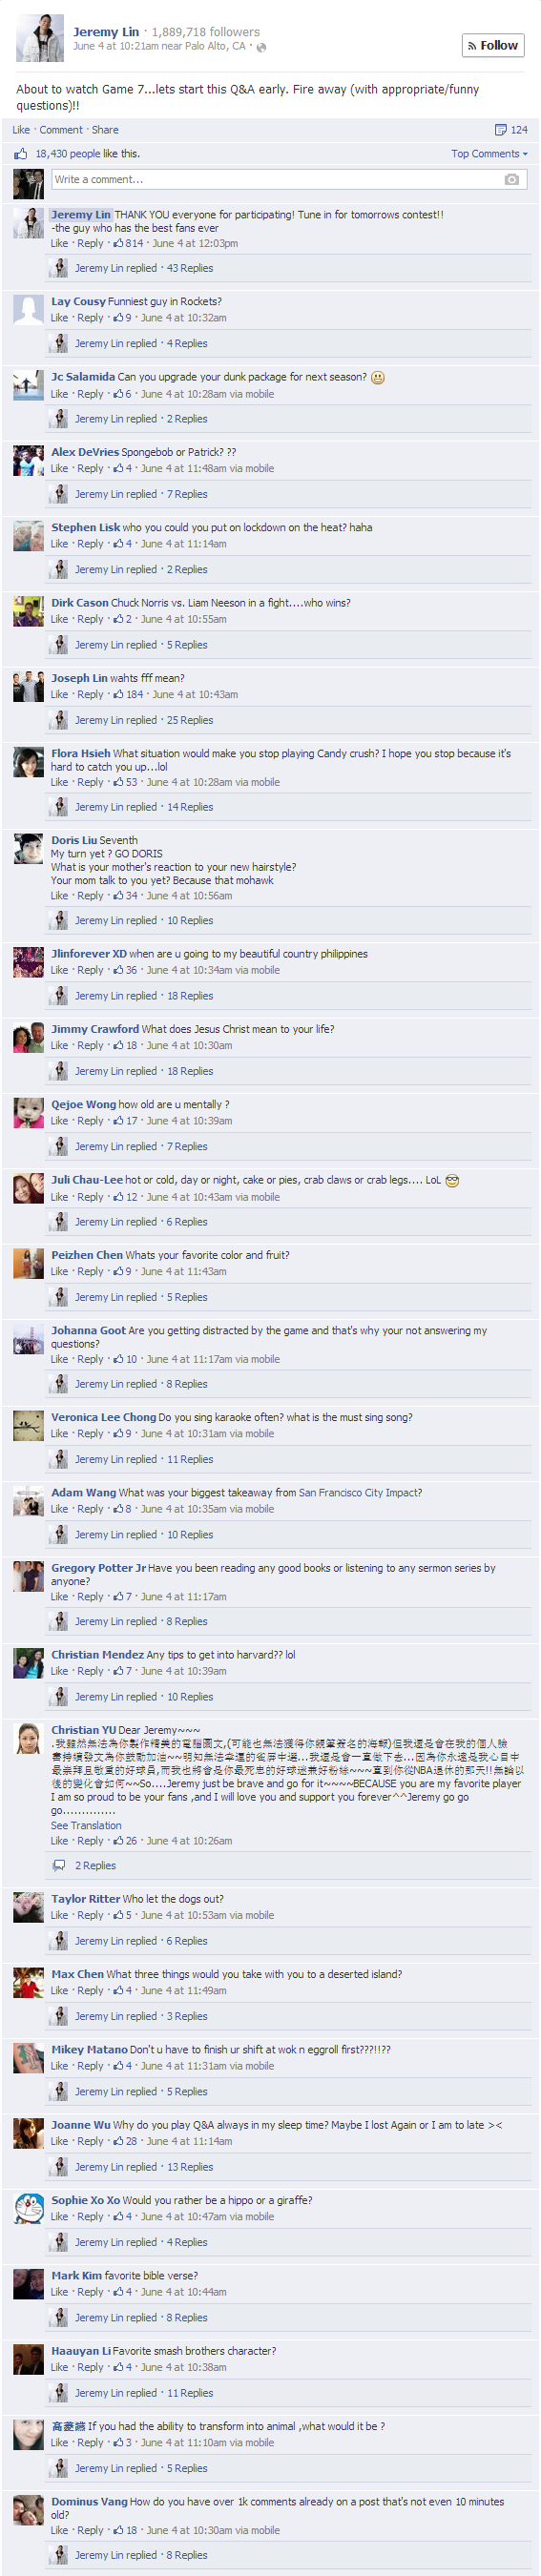 Jeremy Lin - Fan Appreciation Week - Day 1 Facebook Q&A